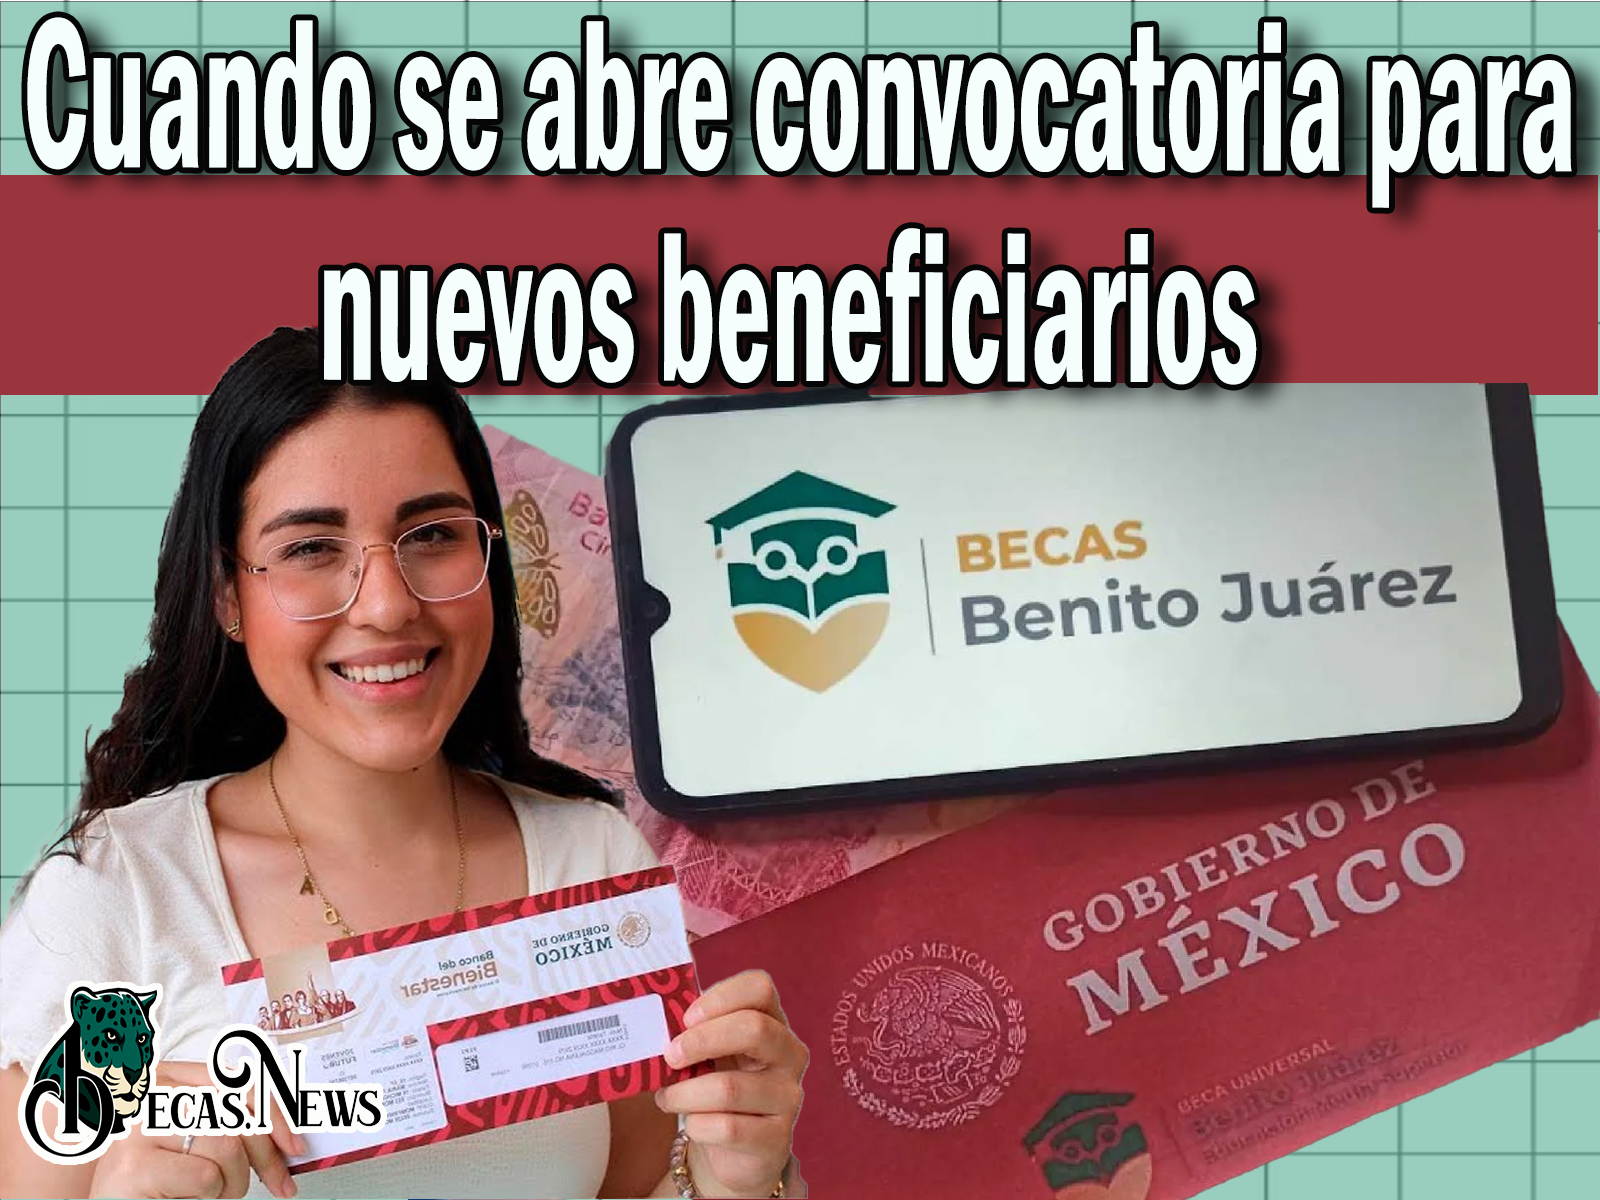  Cuando se abre convocatoria para nuevos beneficiarios para la Beca Benito Juárez 